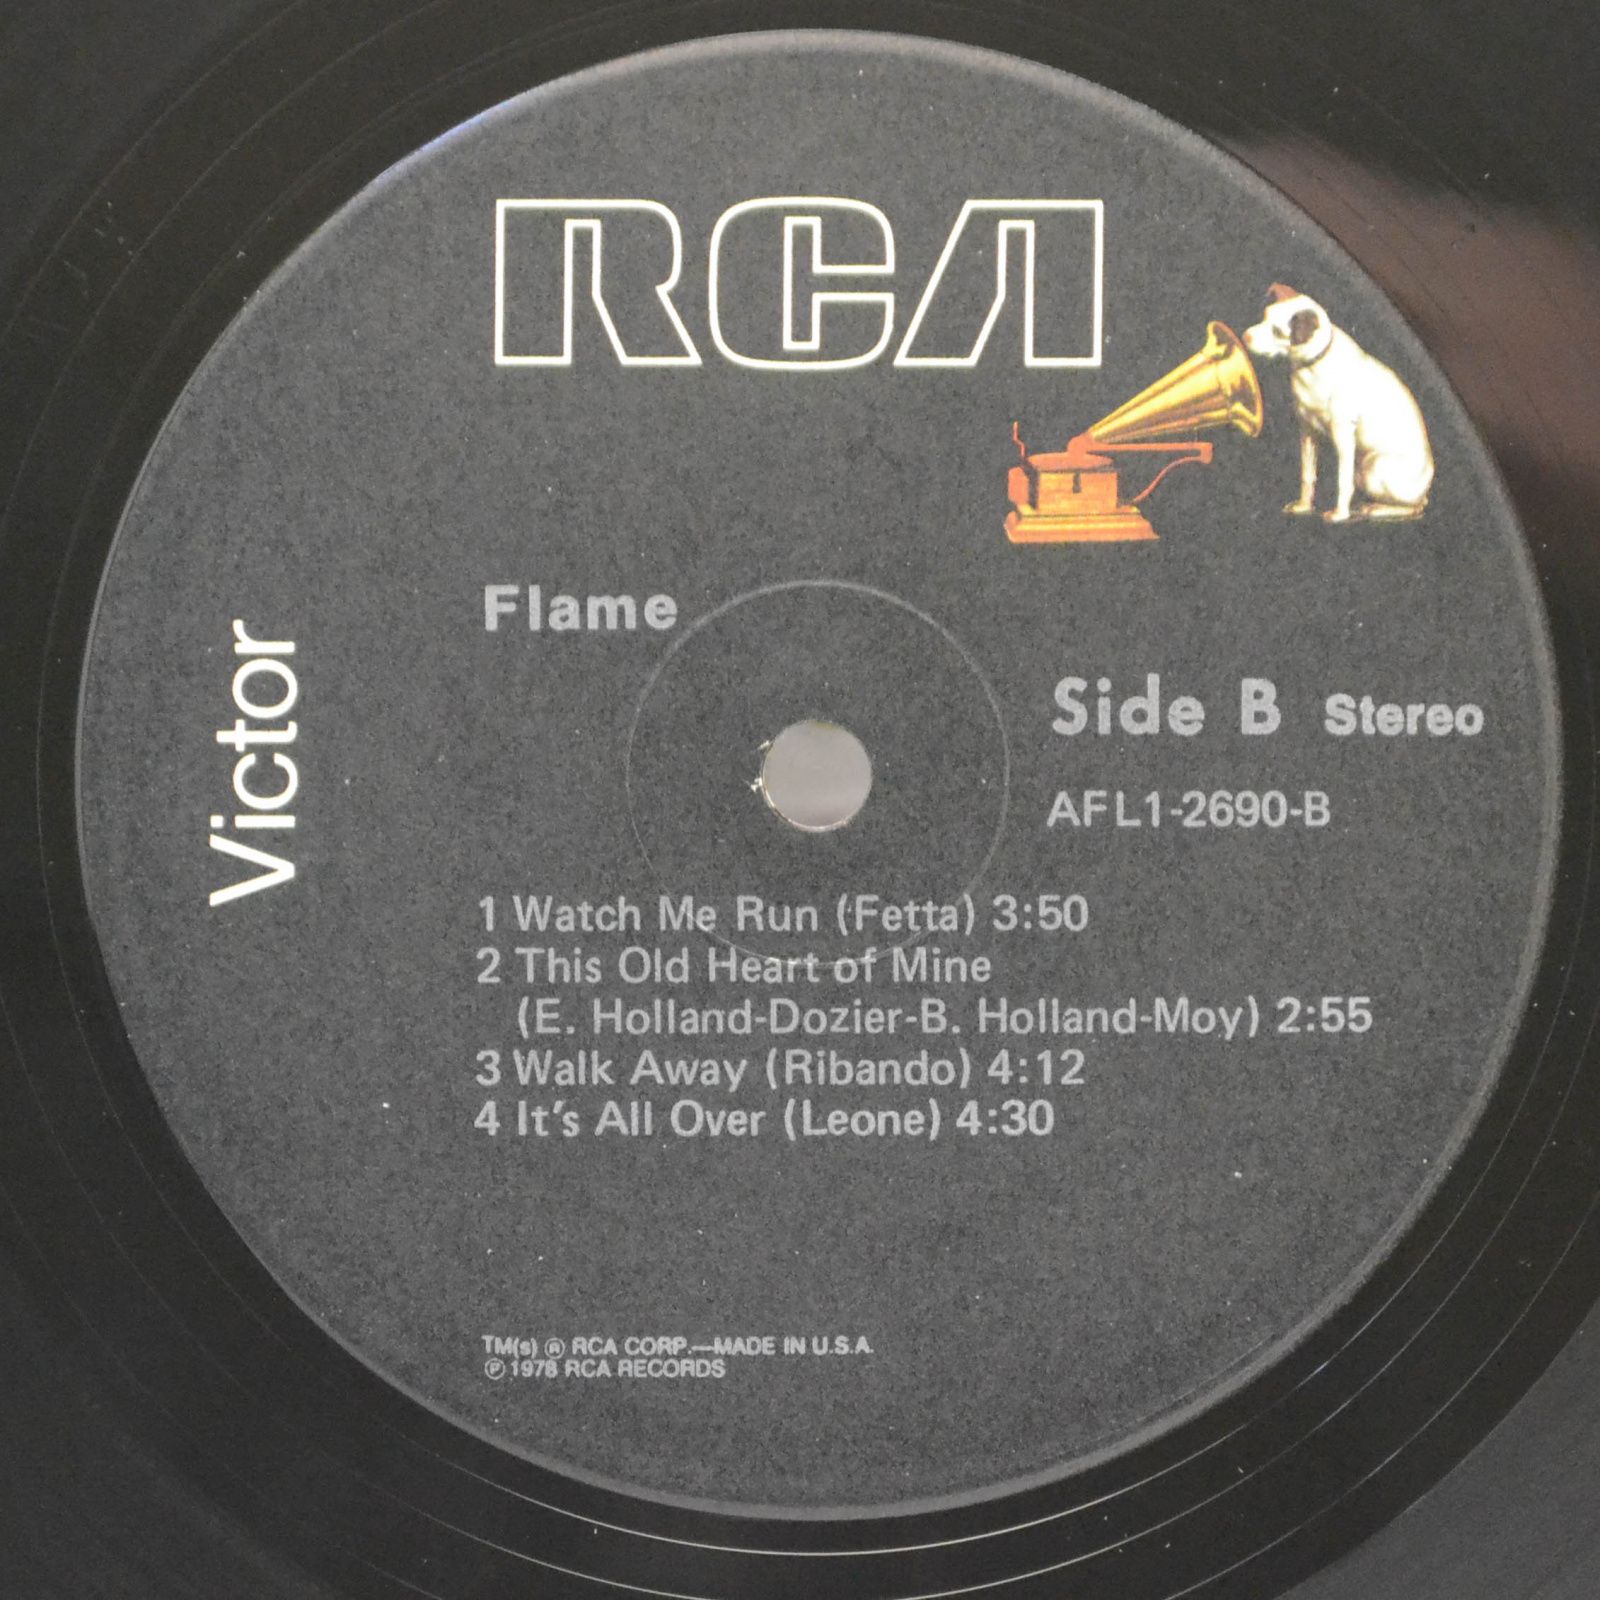 Flame — Flame, 1978